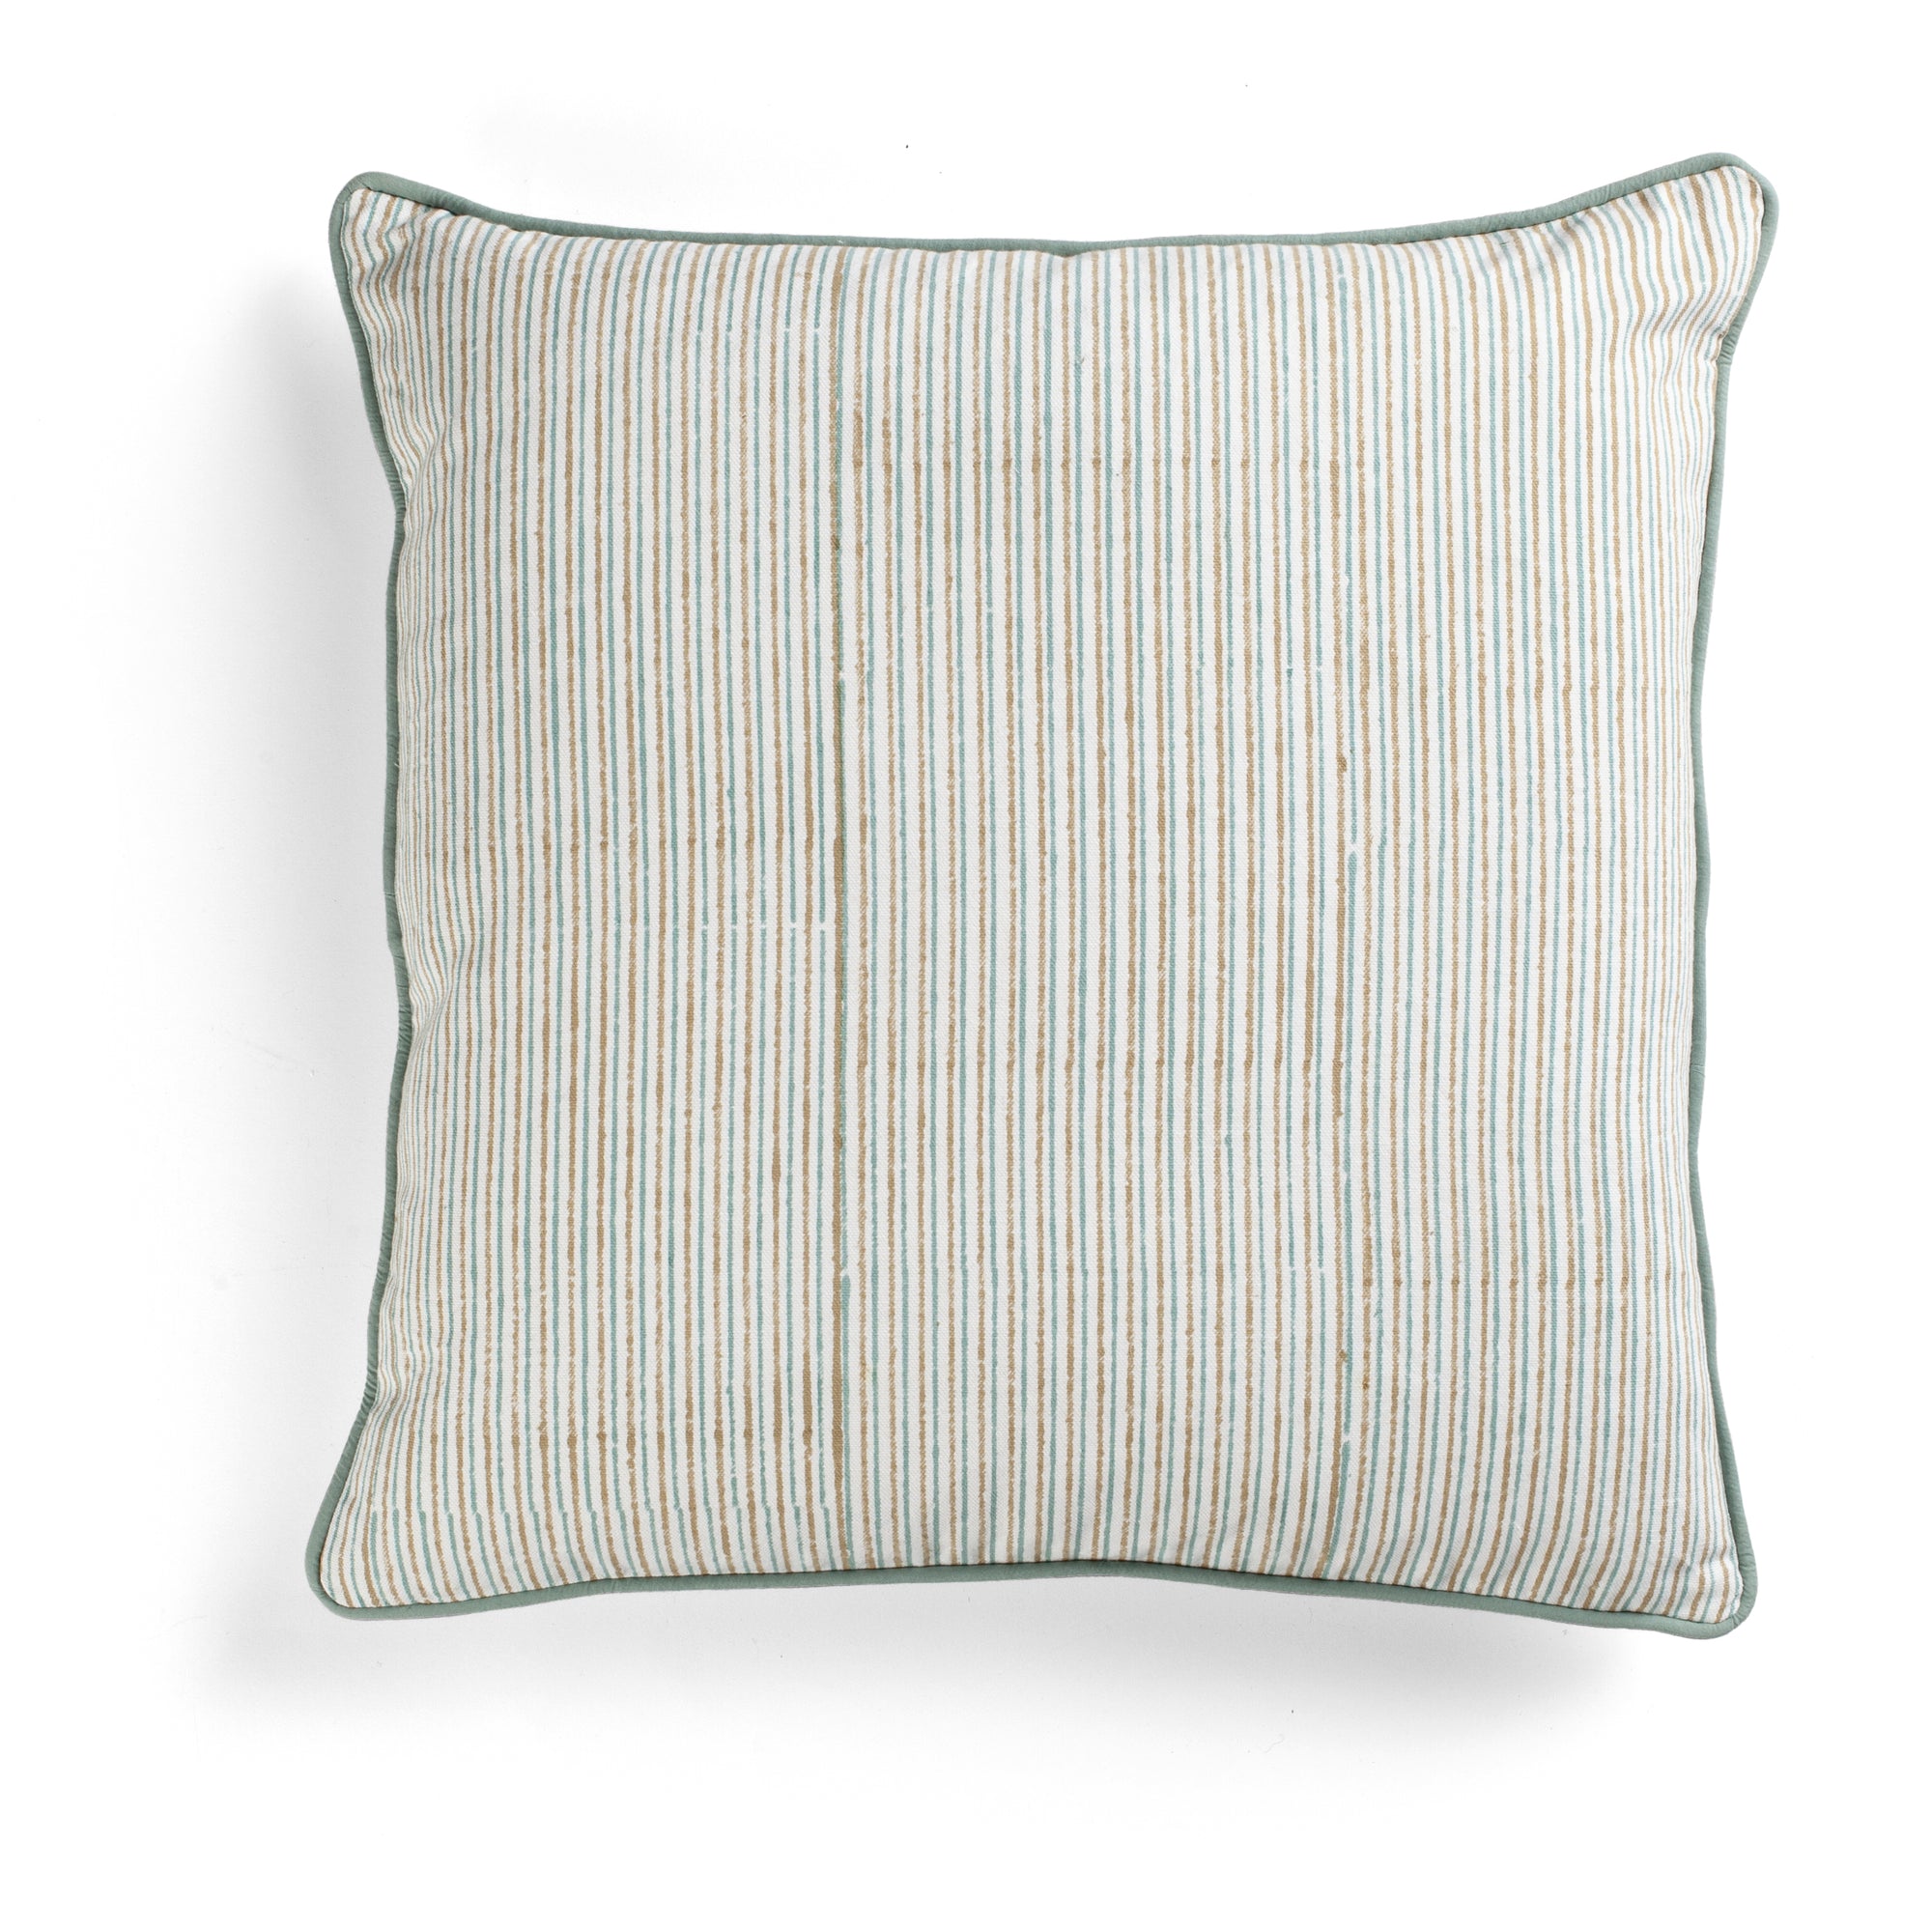 Cotton Cushion Cover Multi Stripe Design - Beige